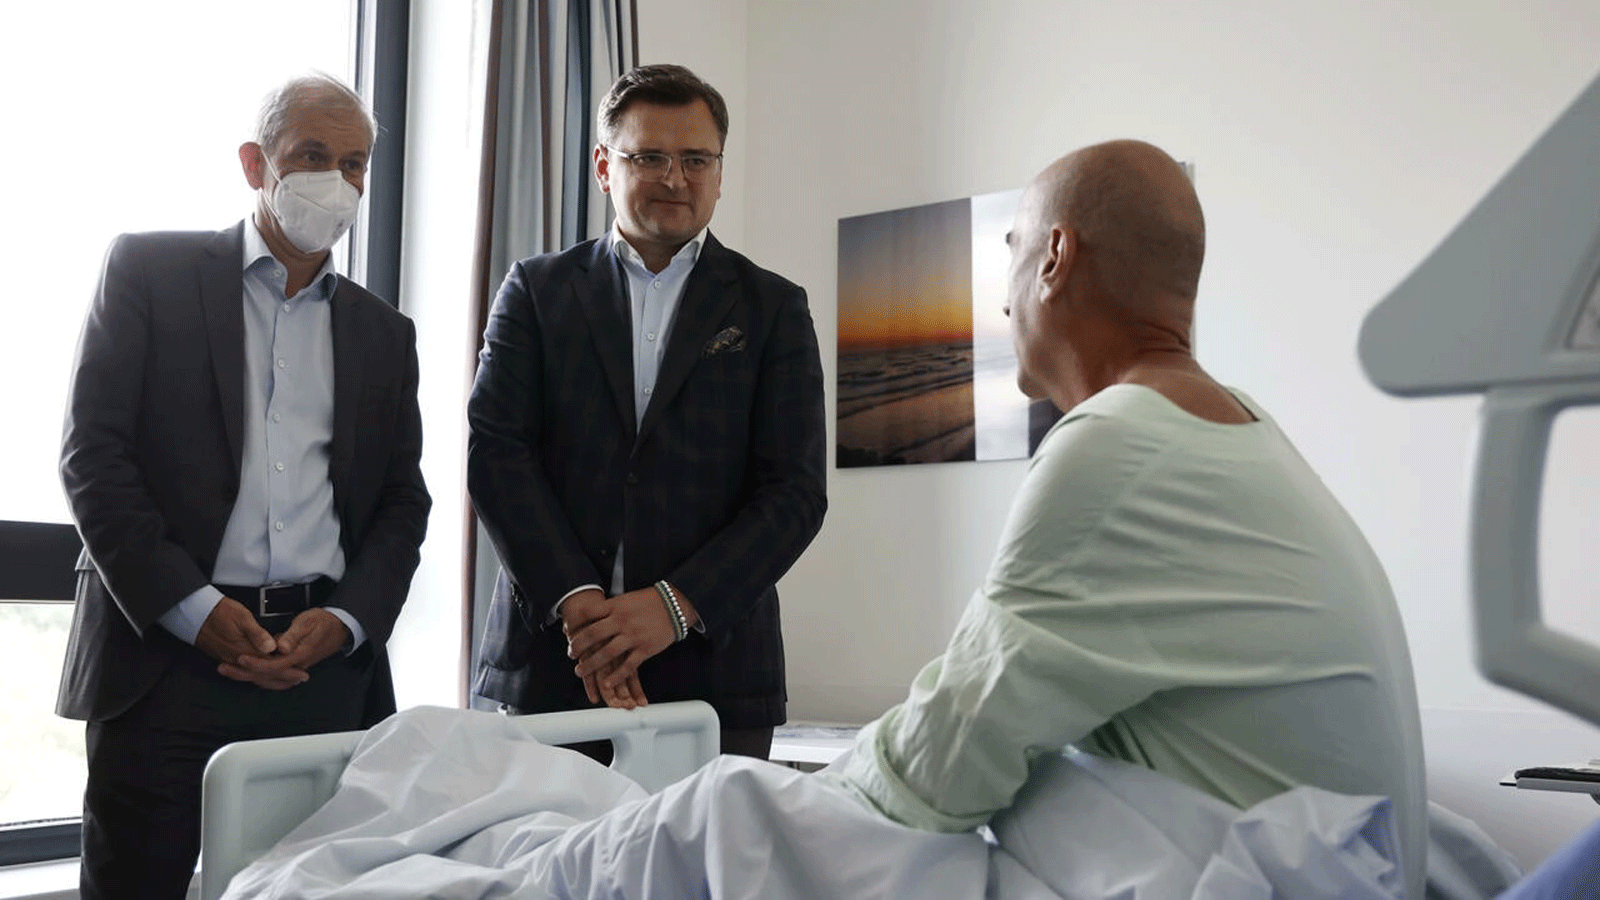  مستشفى UKSH في مدينة لوبيك الألمانية يعتني بـ500 مريض أوكراني ويوظف 61 ممرضًا من وظائف البلاد التي مزقتها الحرب